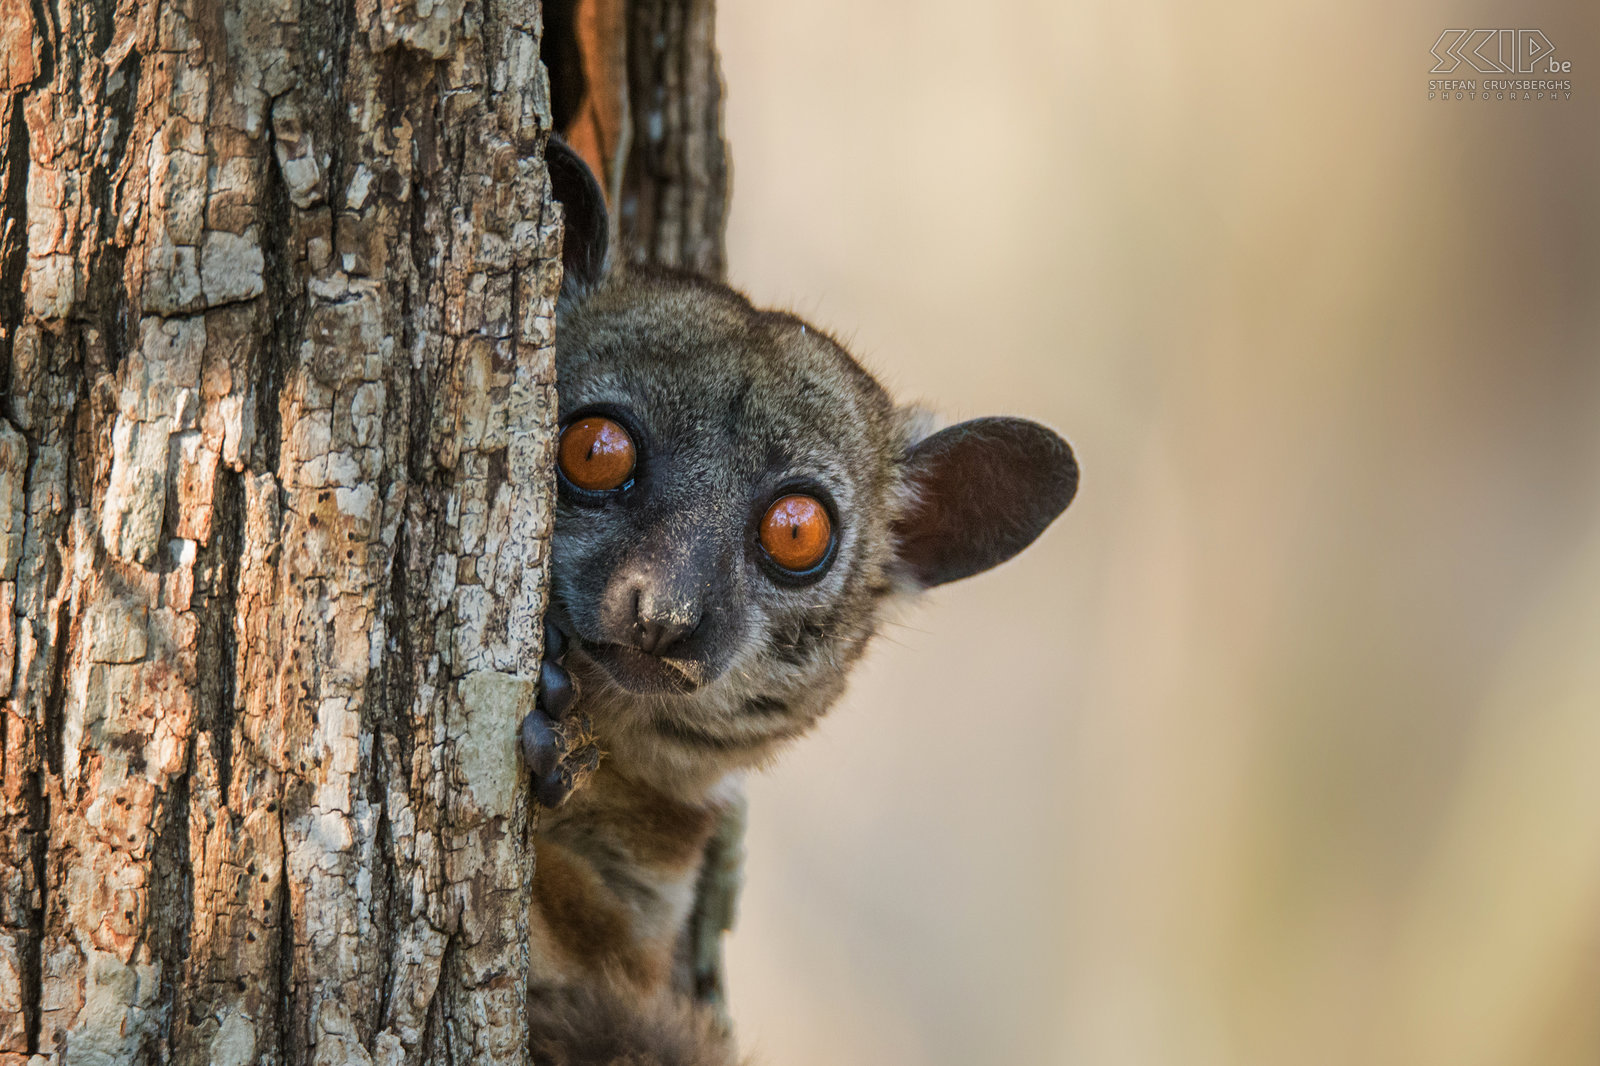 Kirindy - Close-up roodstaartwezelmaki De roodstaartwezelmaki (Red-tailed sportive lemur, Red-tailed weasel lemur, Lepilemur ruficaudatus) is een lemurensoort die voornamelijk ’s nachts leeft. Overdag slapen ze in een boomholte. We vonden deze kleine schattige maki met zijn grote kleurrijke ogen tijdens een wandeling in het Kirindy Forest. Stefan Cruysberghs